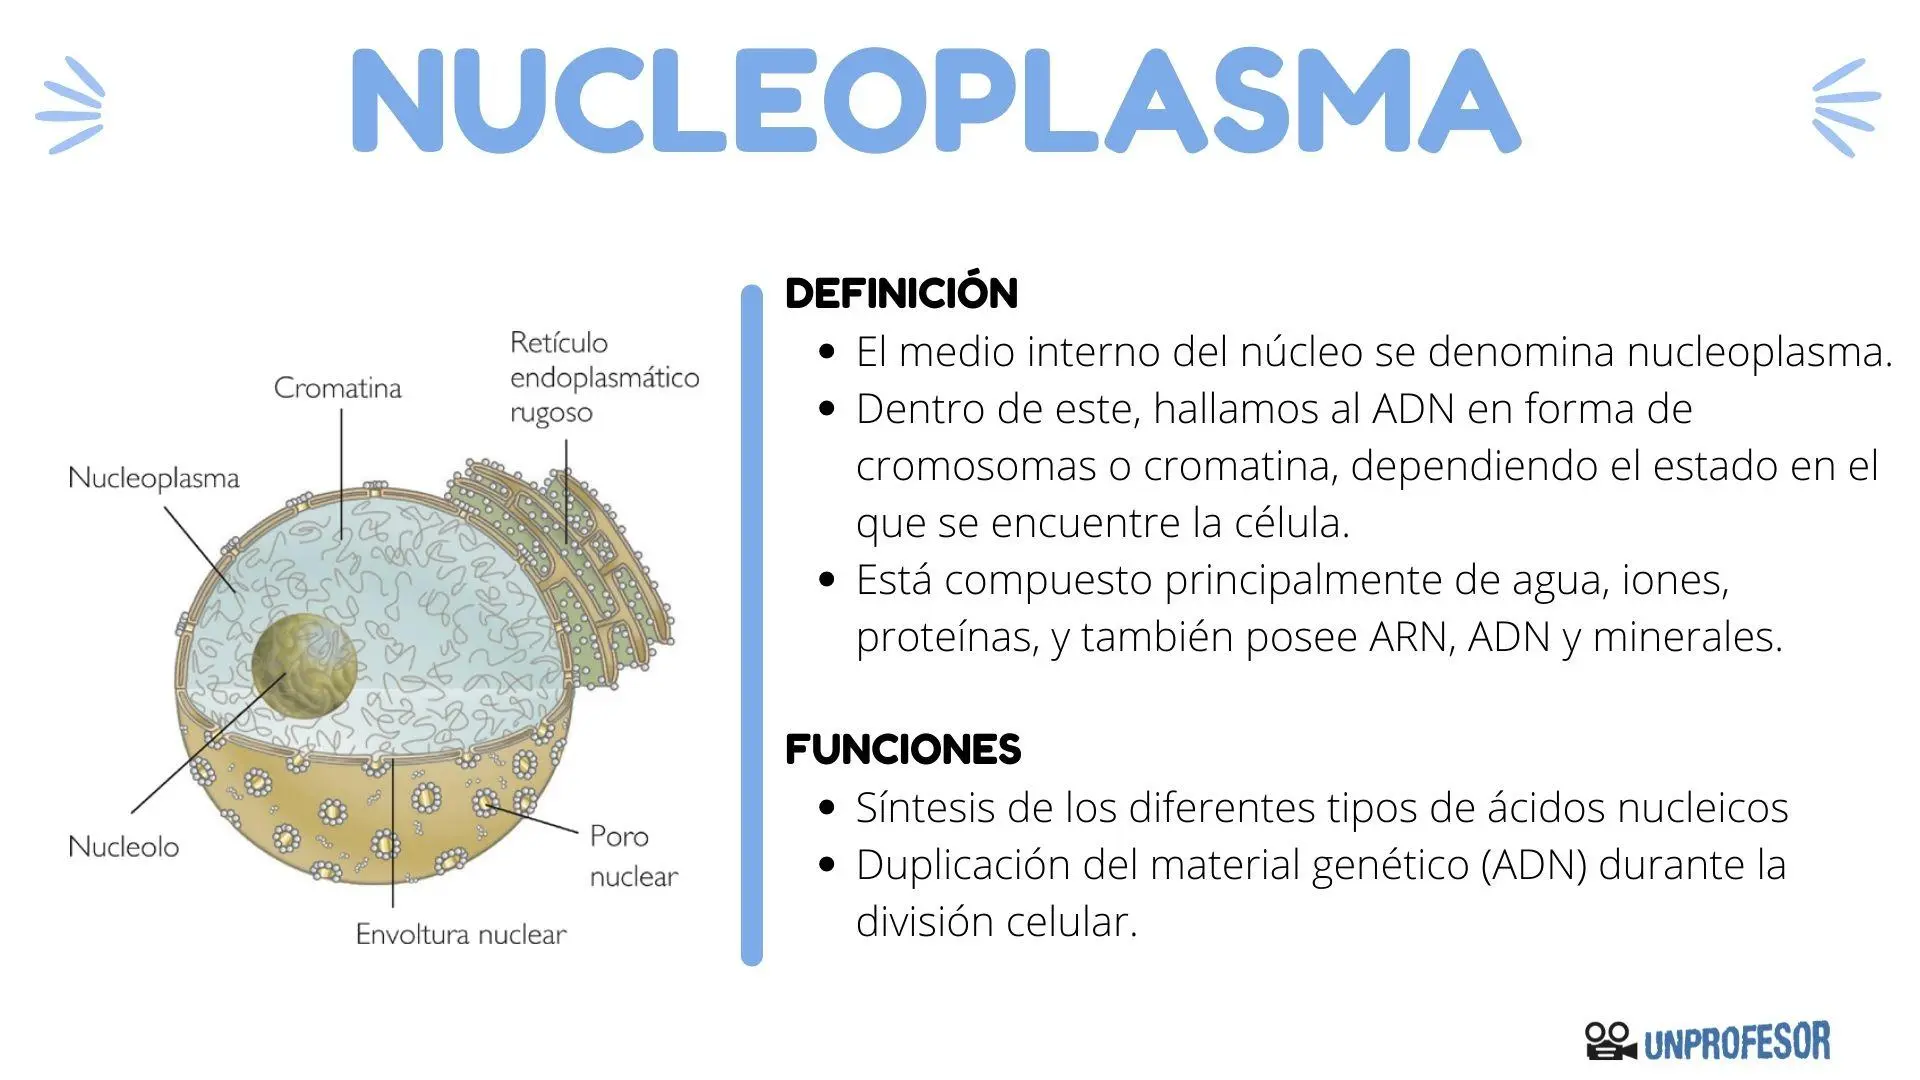 caracteristicas del jugo nuclear - Qué características presenta la envoltura nuclear